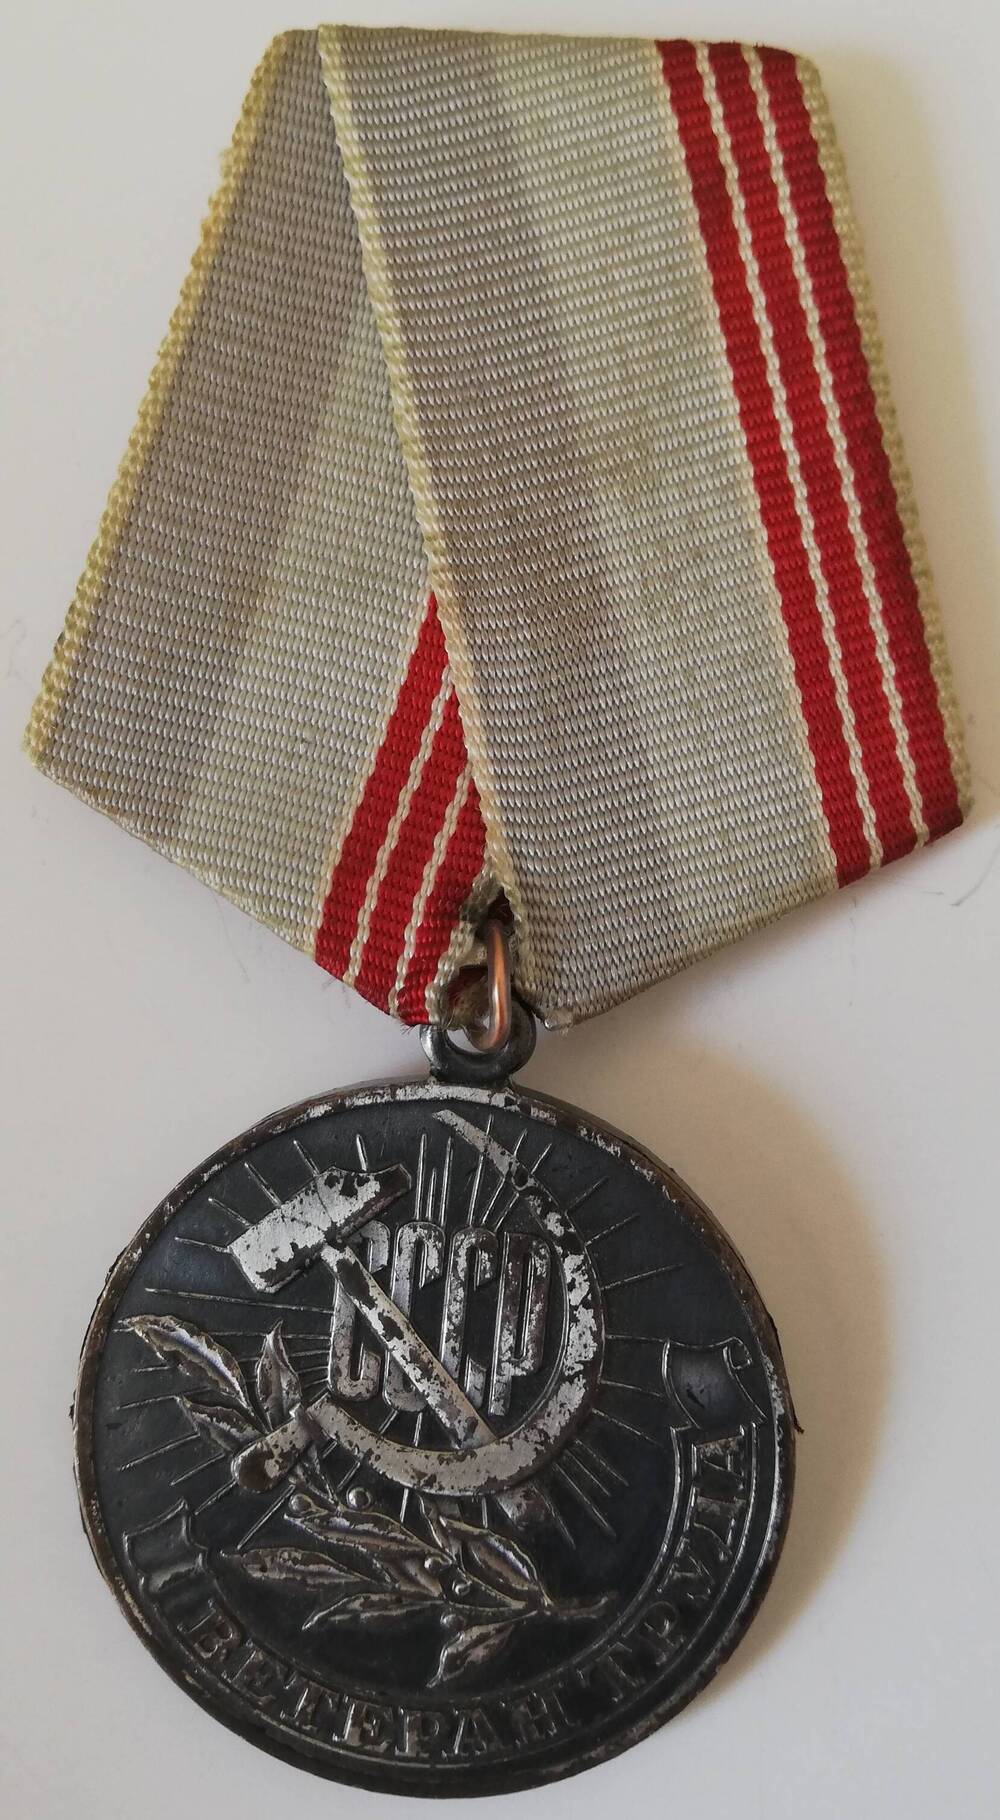 Медаль Ветеран труда, врученная Землякову Р.П.